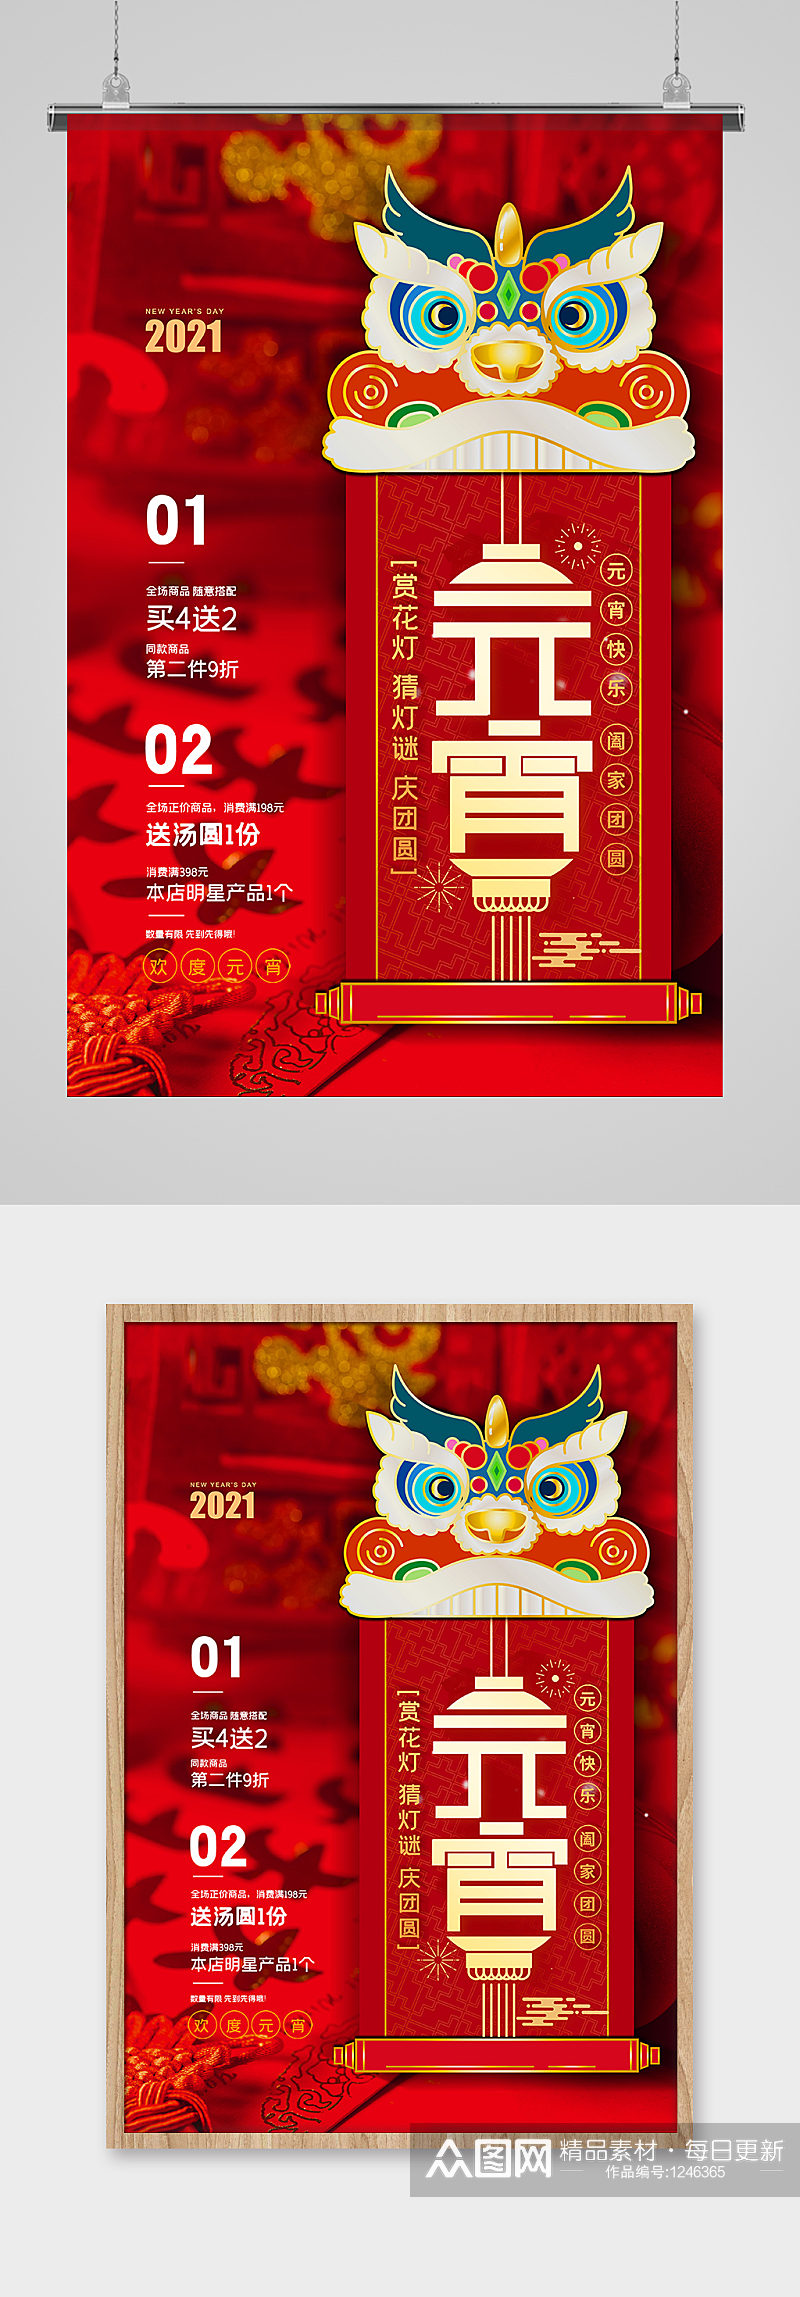 元宵节节日活动红色中国风海报素材